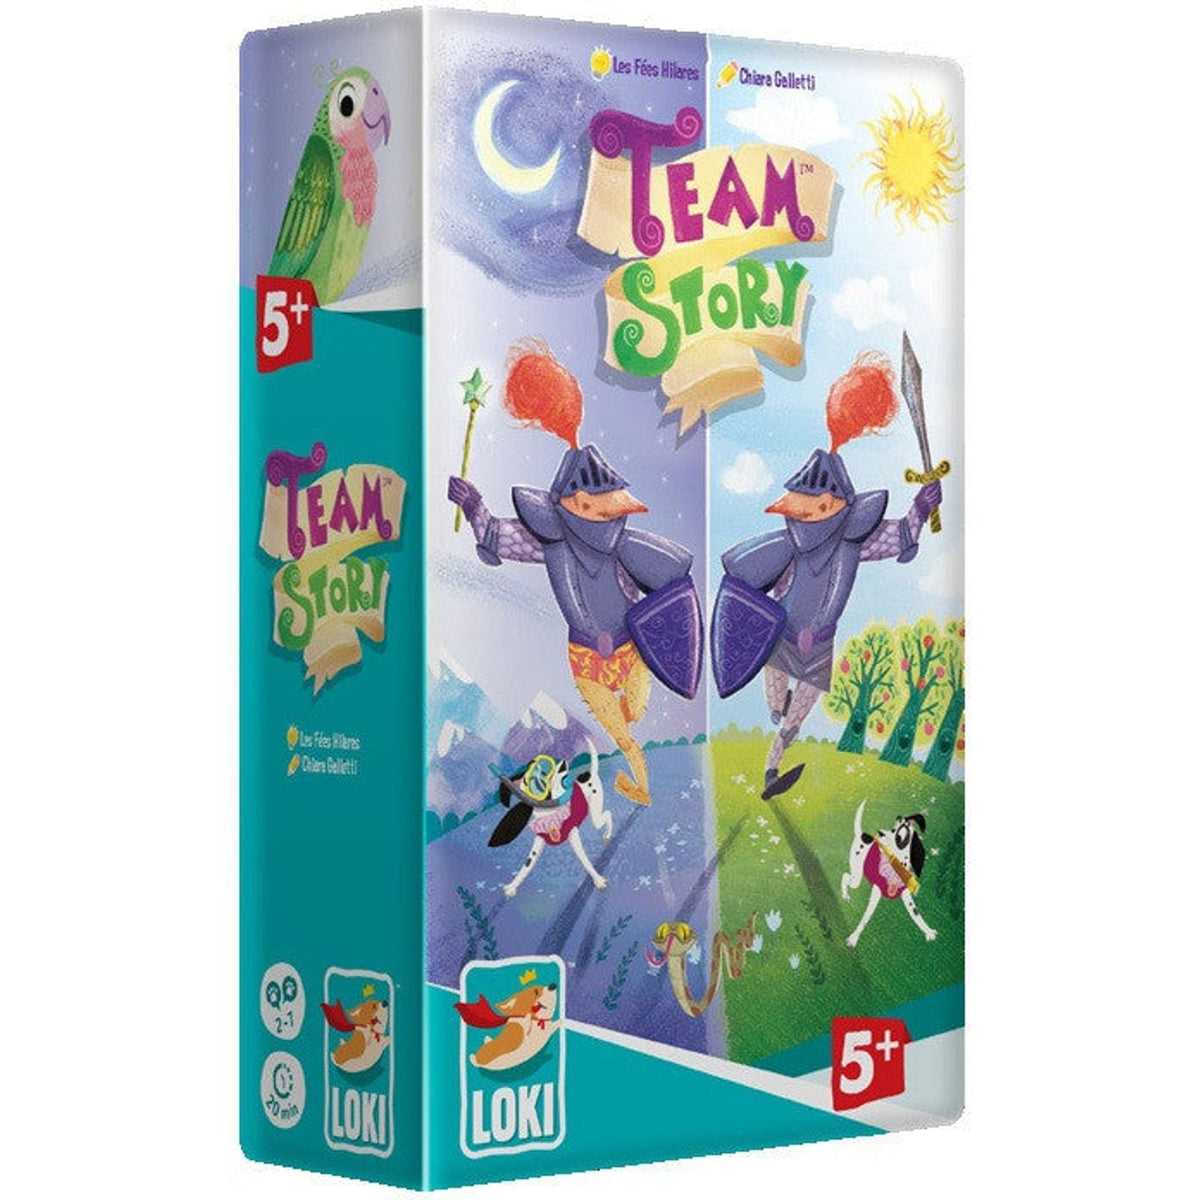 LOKI Team Story - Toybox Tales